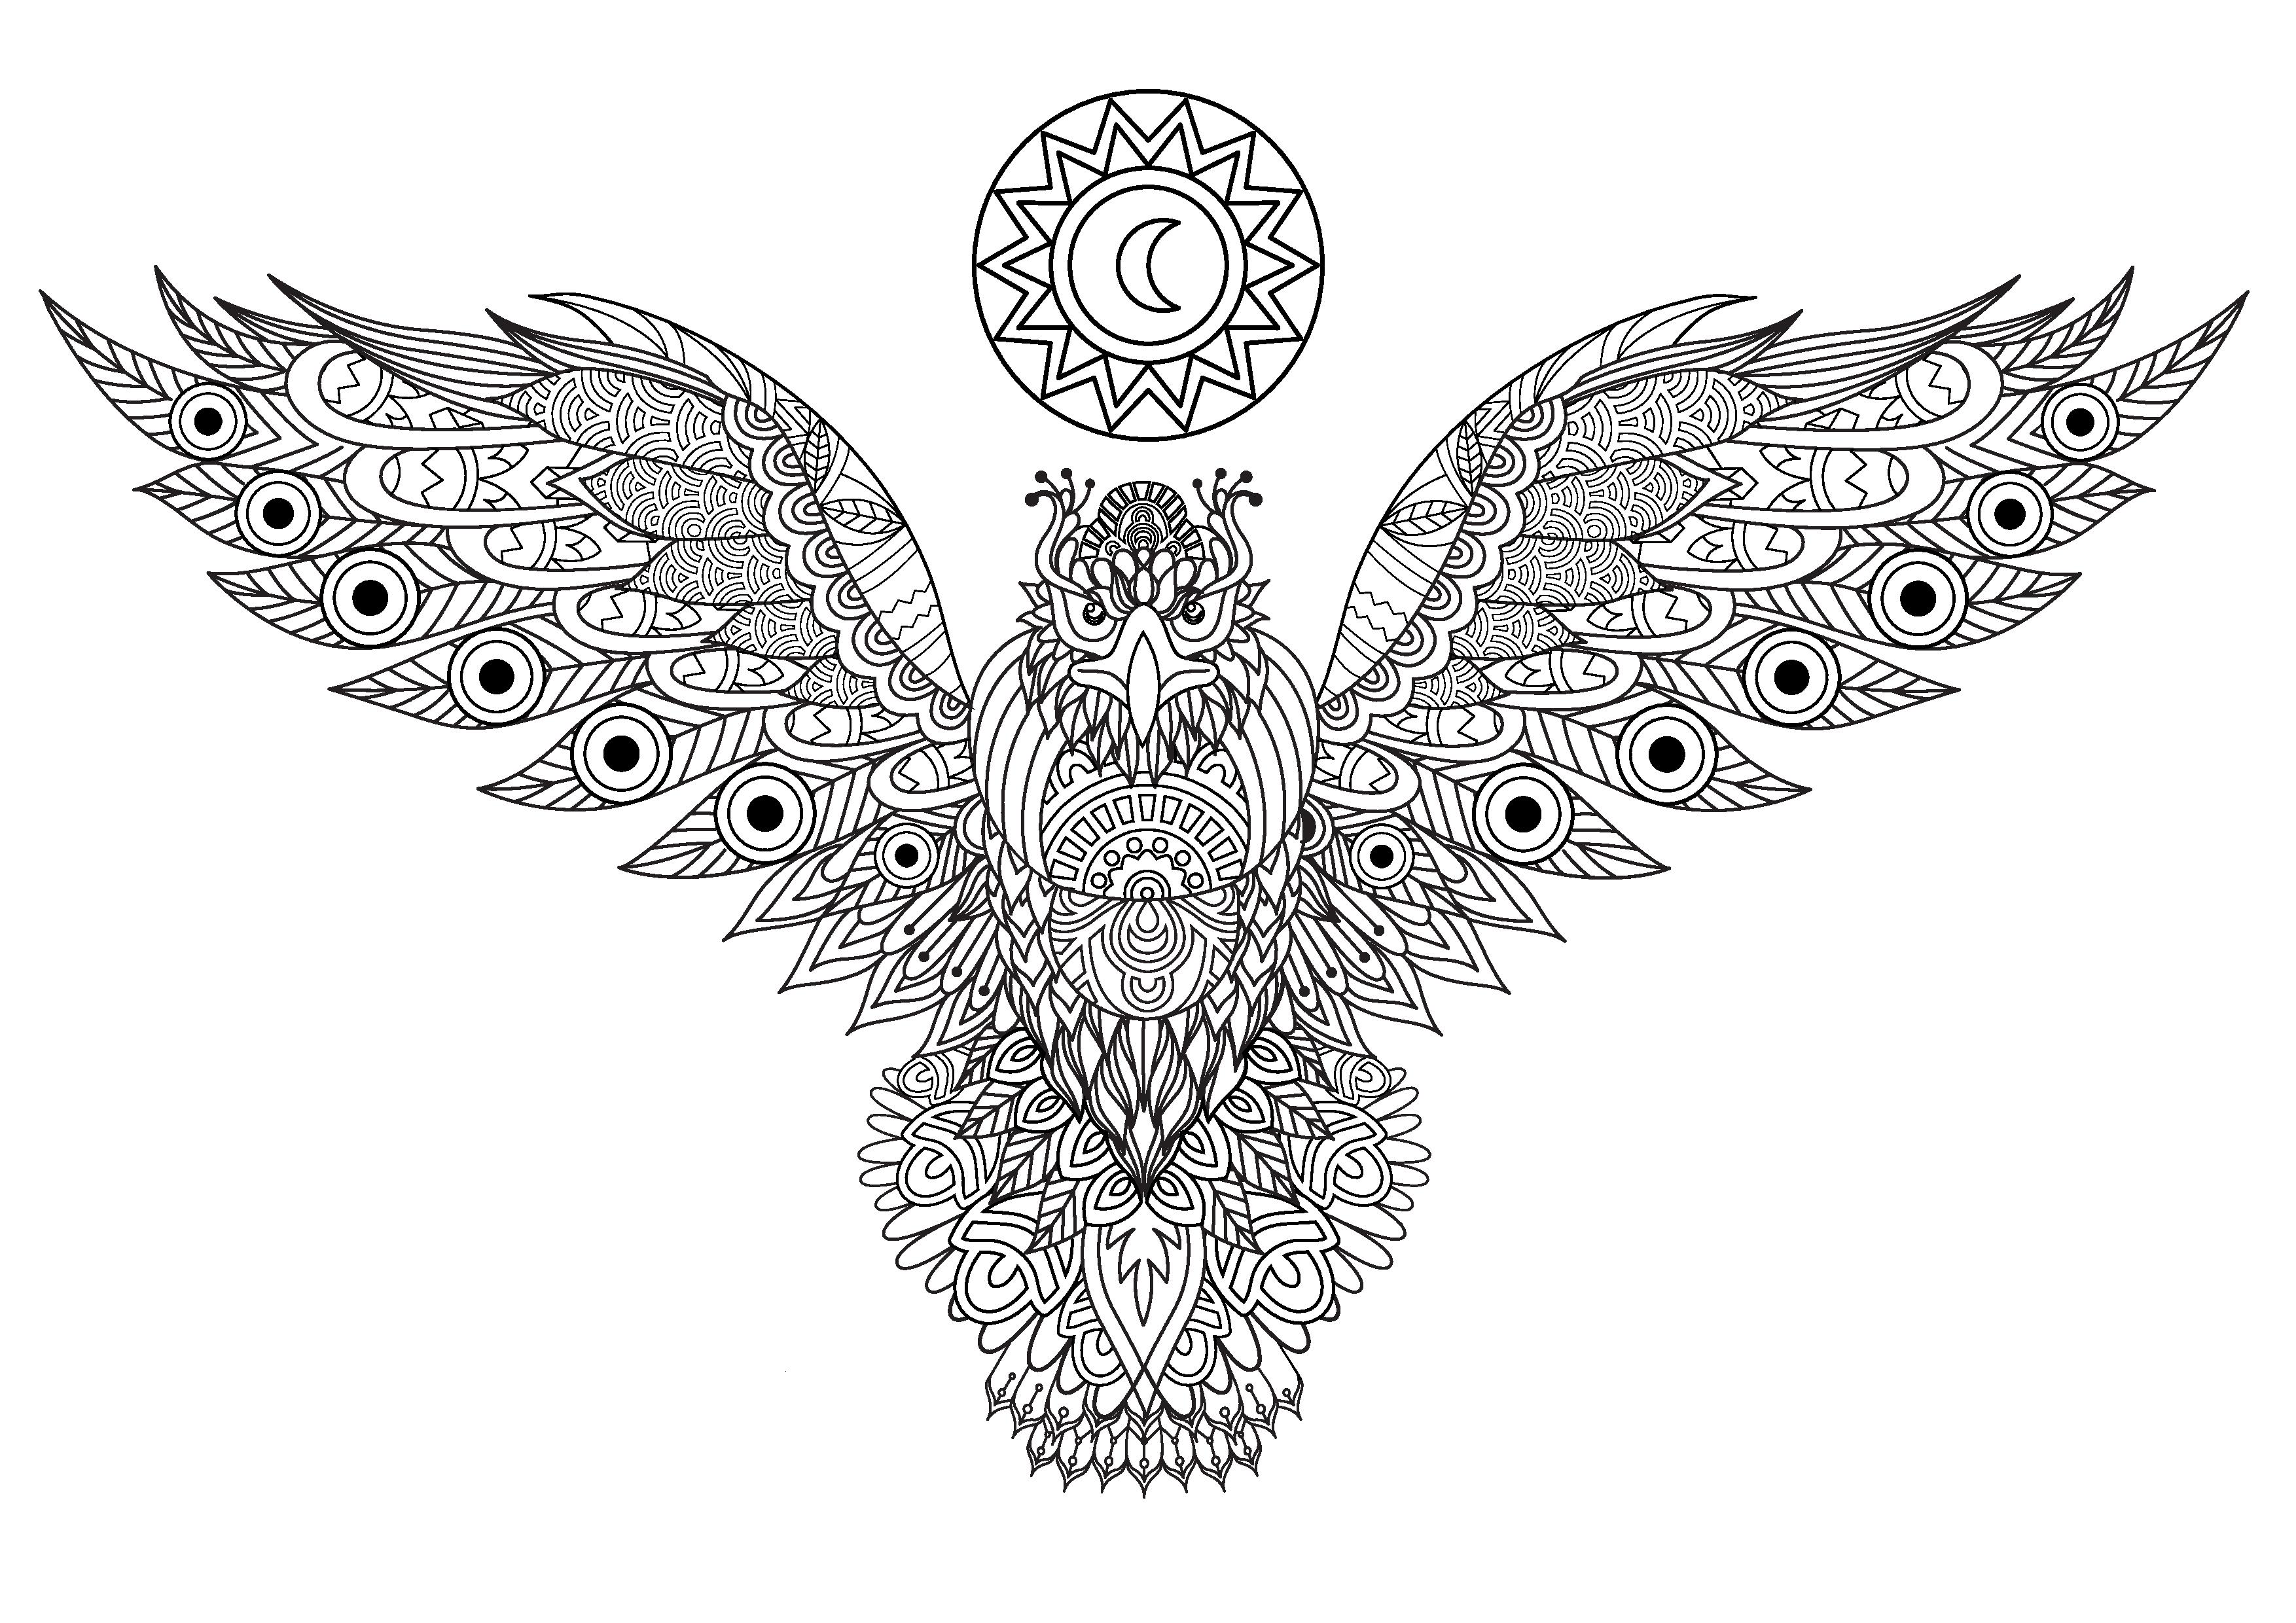 Águia majestosa que abre as asas e apresenta muitos desenhos diversos e complexos